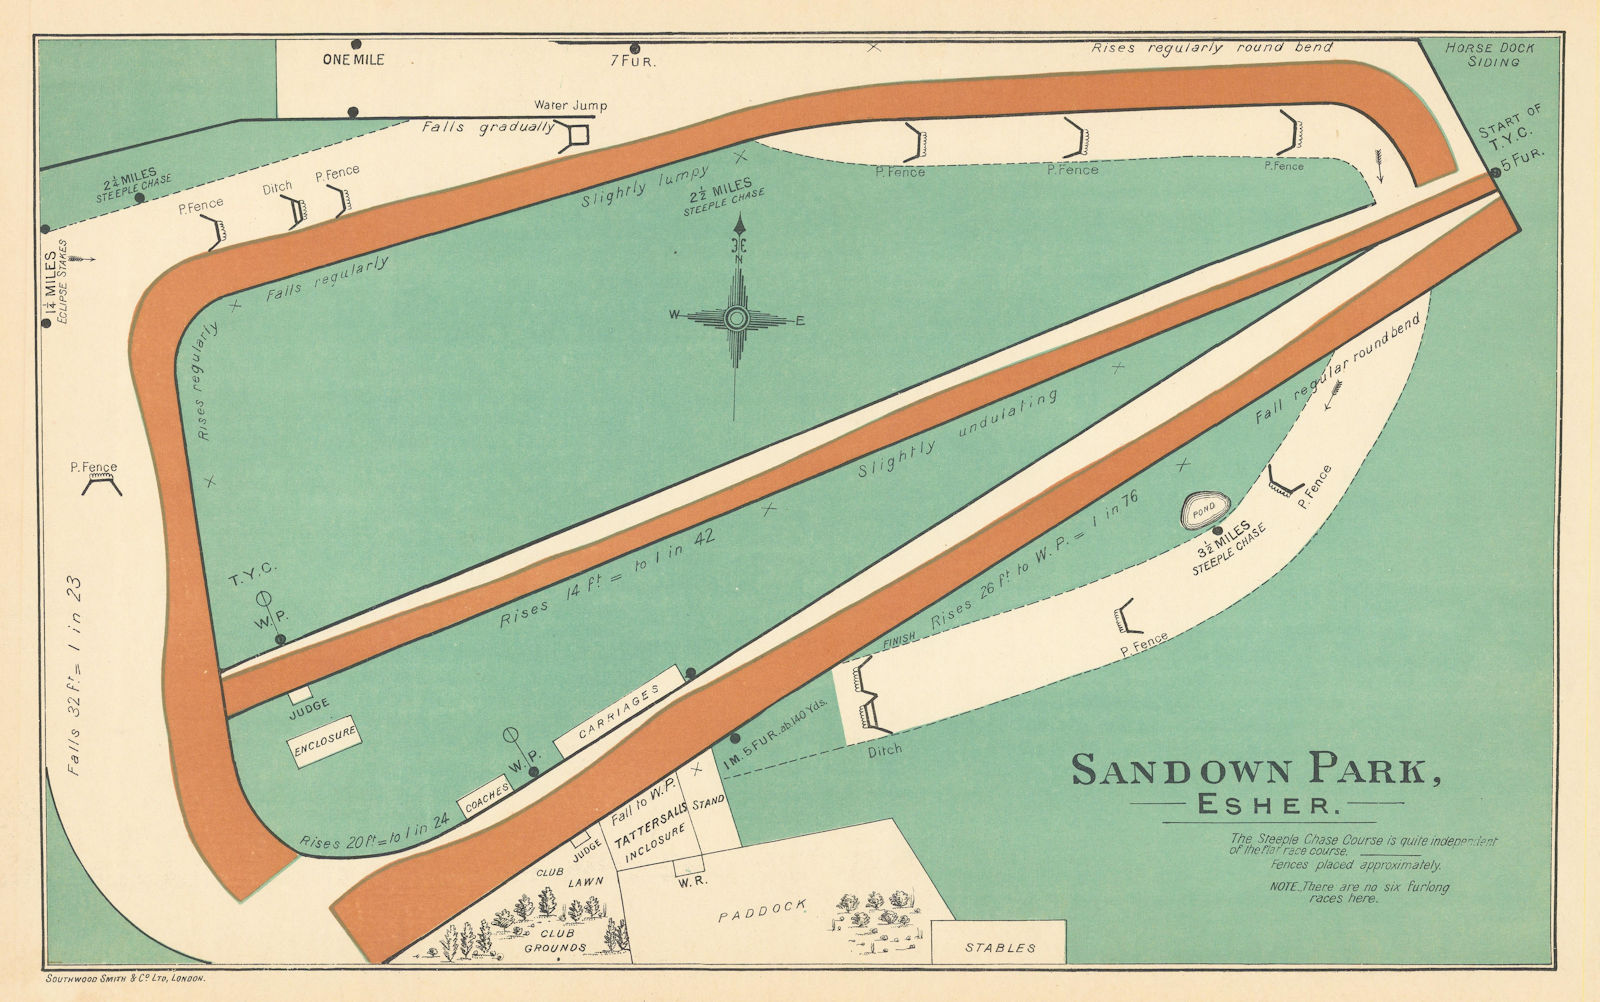 Associate Product Sandown Park, Esher racecourse, Surrey. BAYLES 1903 old antique map plan chart